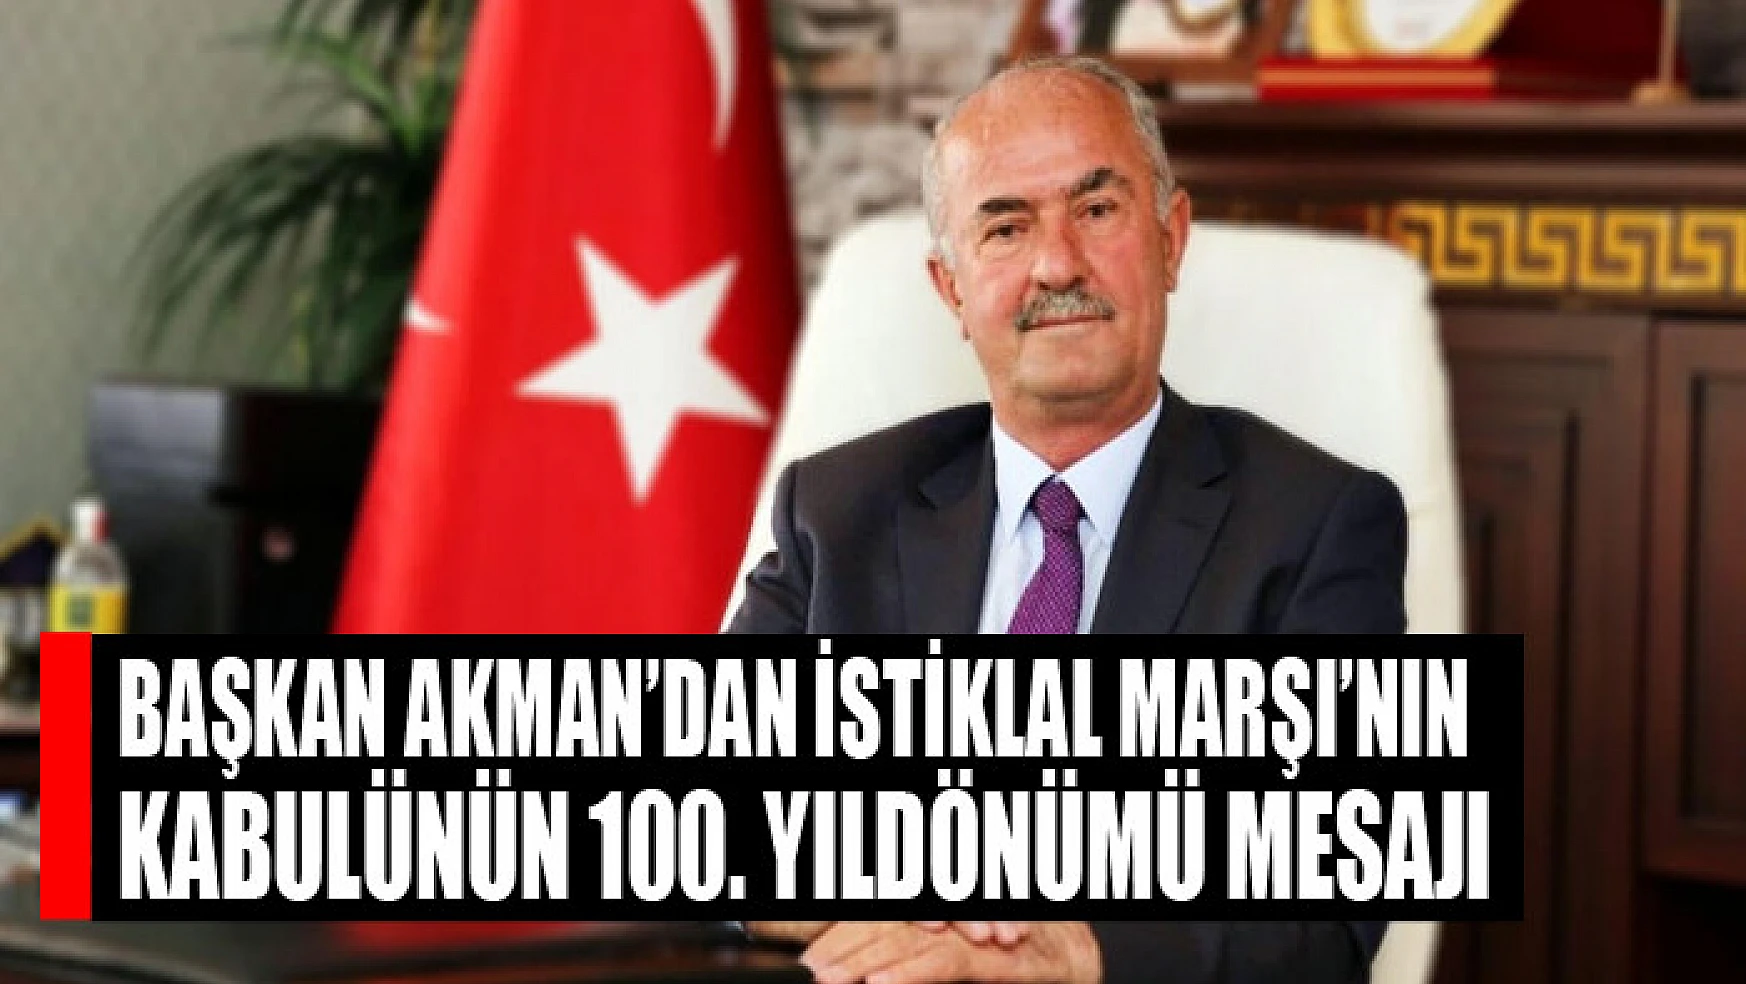 Başkan Akman'dan İstiklal Marşı'nın kabulünün 100. yıldönümü mesajı